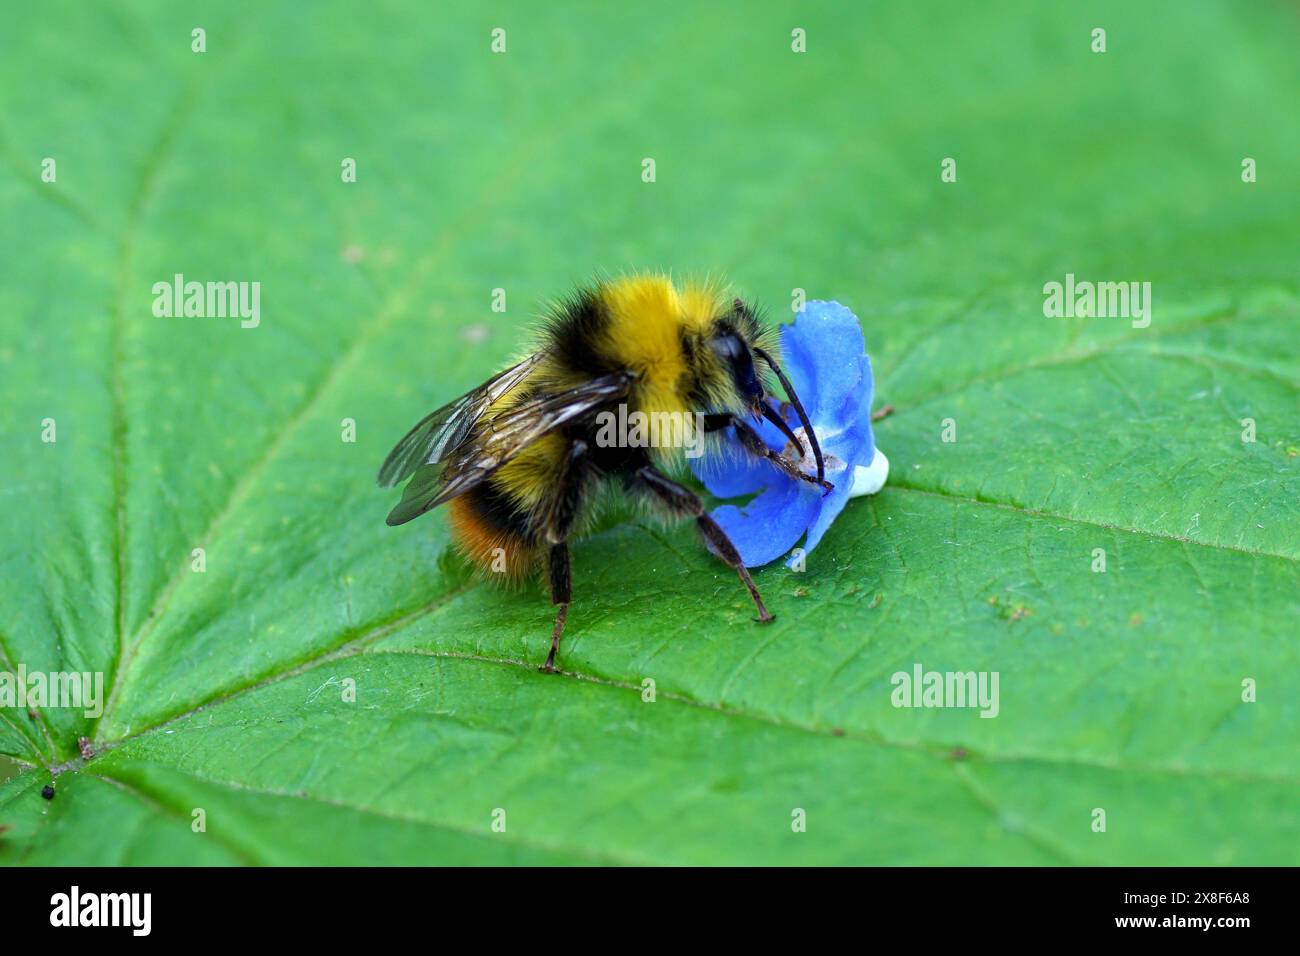 Nahaufnahme frühe Hummel (Bombus pratorum), Familie Apidae und eine blaue, gefallene Blume des grünen Alkanets (Pentaglottis sempervirens). Frühling, Mai, Stockfoto